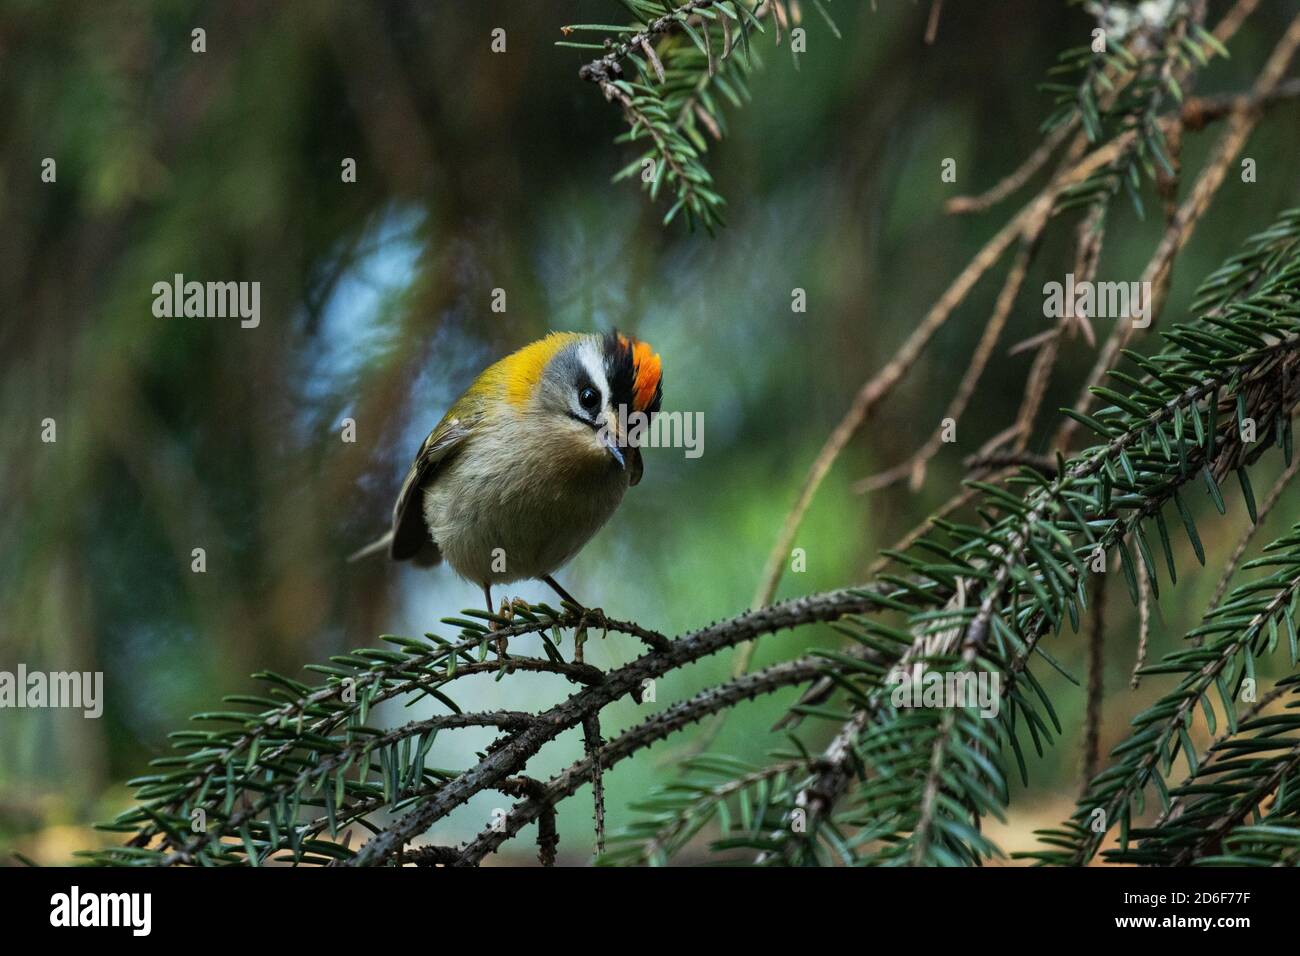 Kleiner Europäischer singvogel Feuertreste, Regulus ignicapilla, singt während einer Brutzeit im Sommer in einem borealen Wald in estnischer Natur. Stockfoto